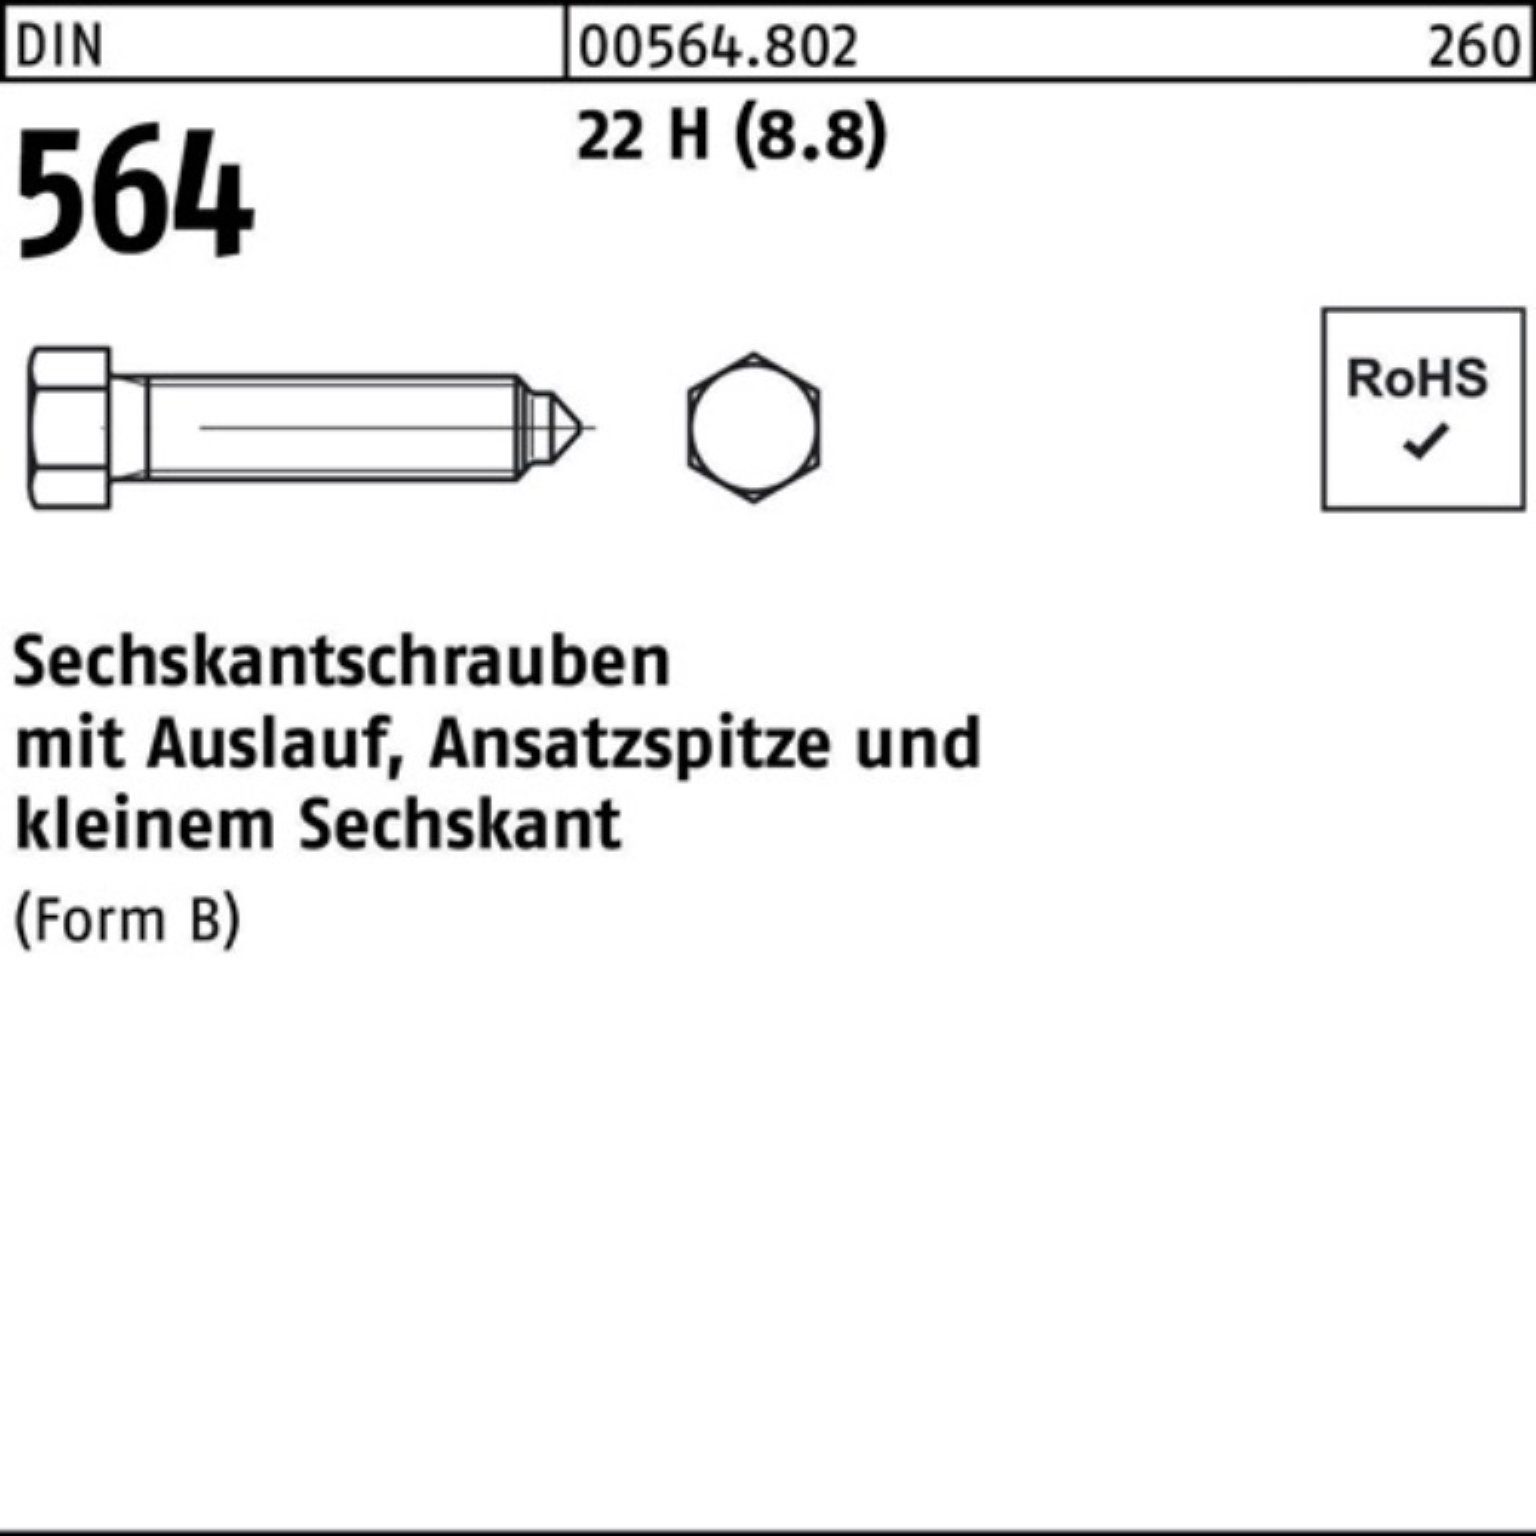 Reyher Sechskantschraube 100er Pack Sechskantschraube DIN 564 Ansatzspitze/Auslauf BM 20x 70 22